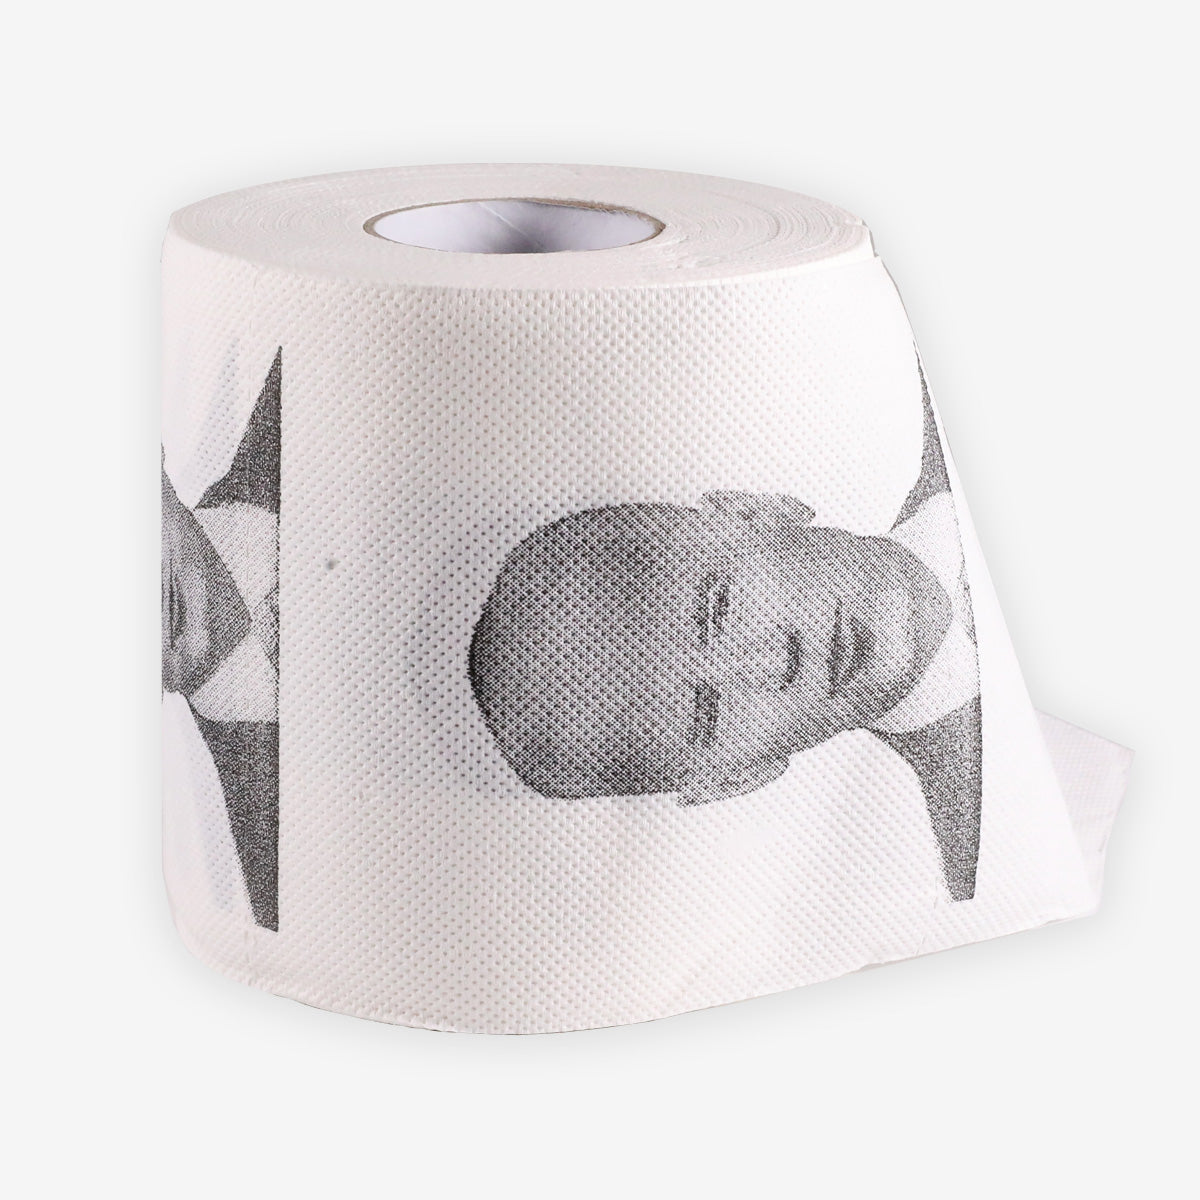 President Biden Prank Toilet Paper Roll